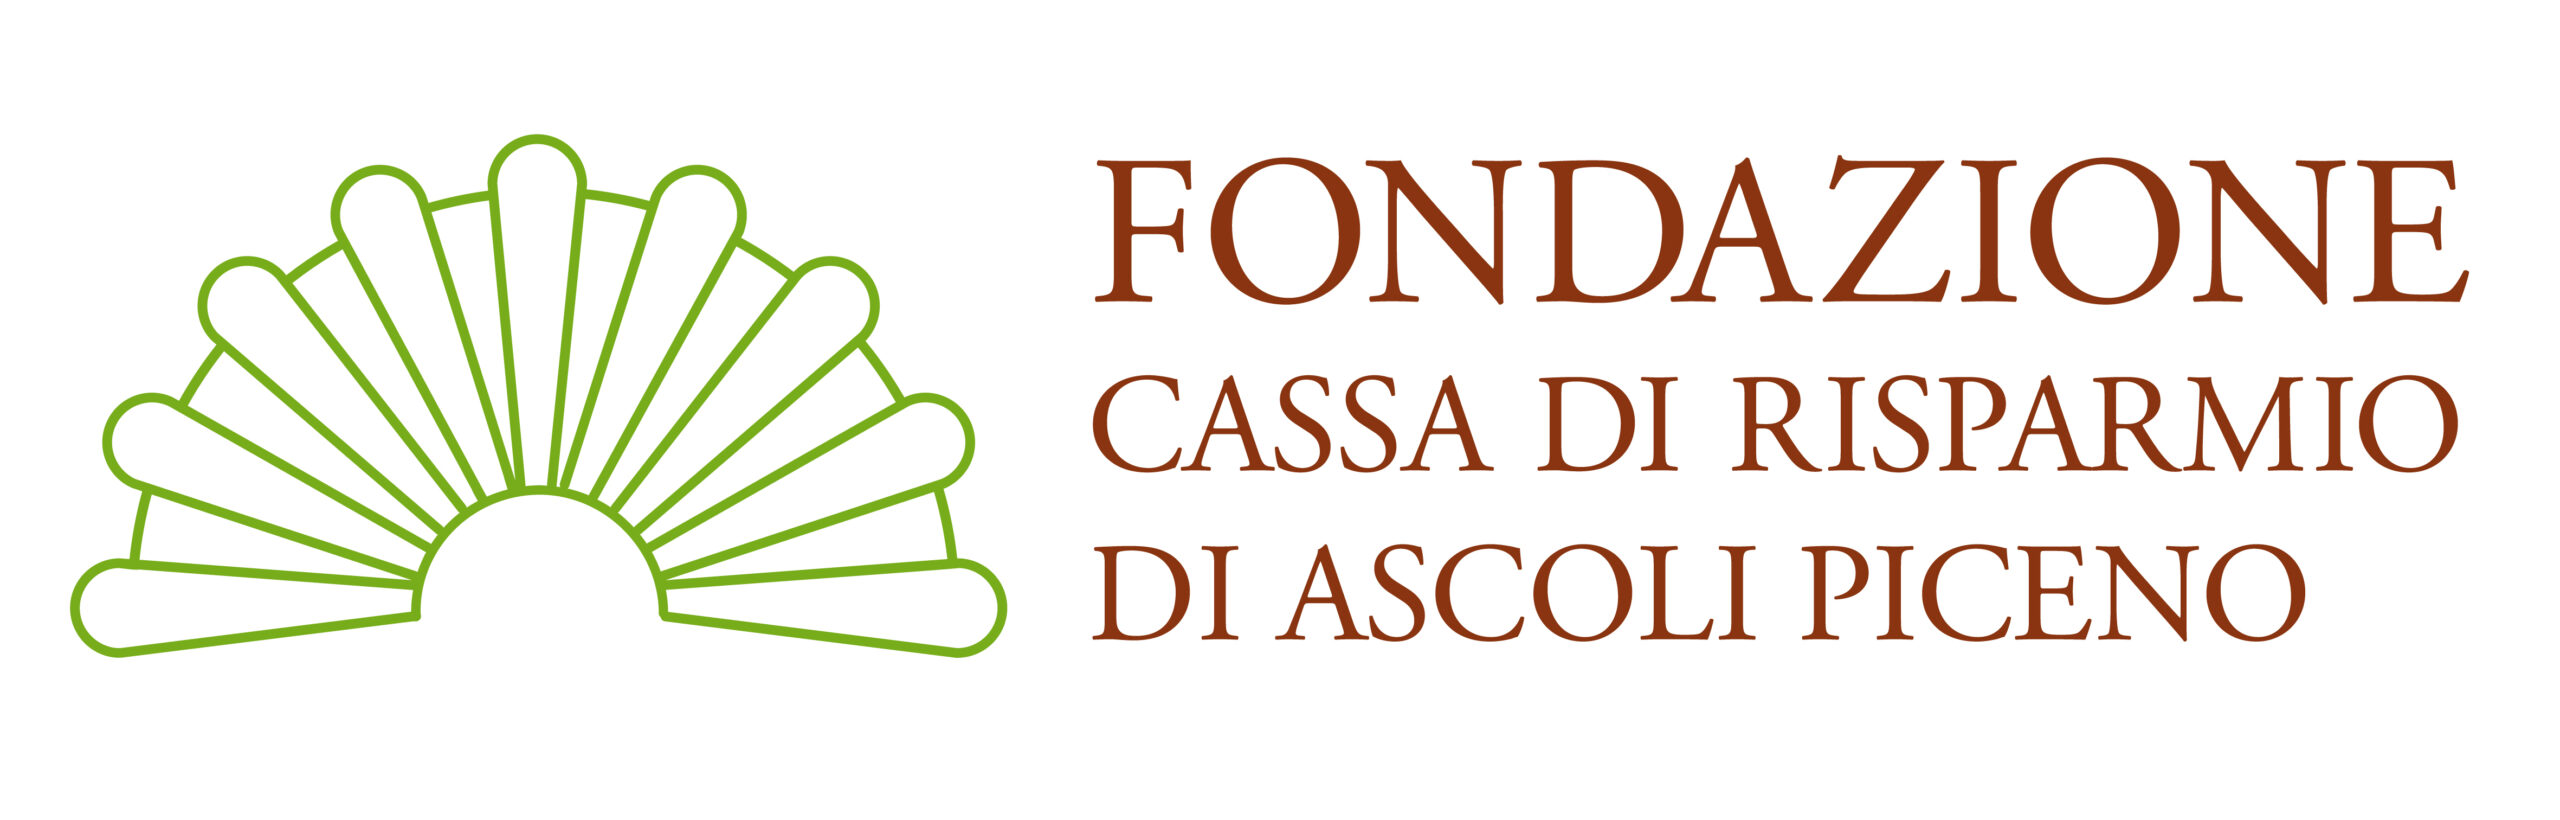 Logo Fondazione Carisap